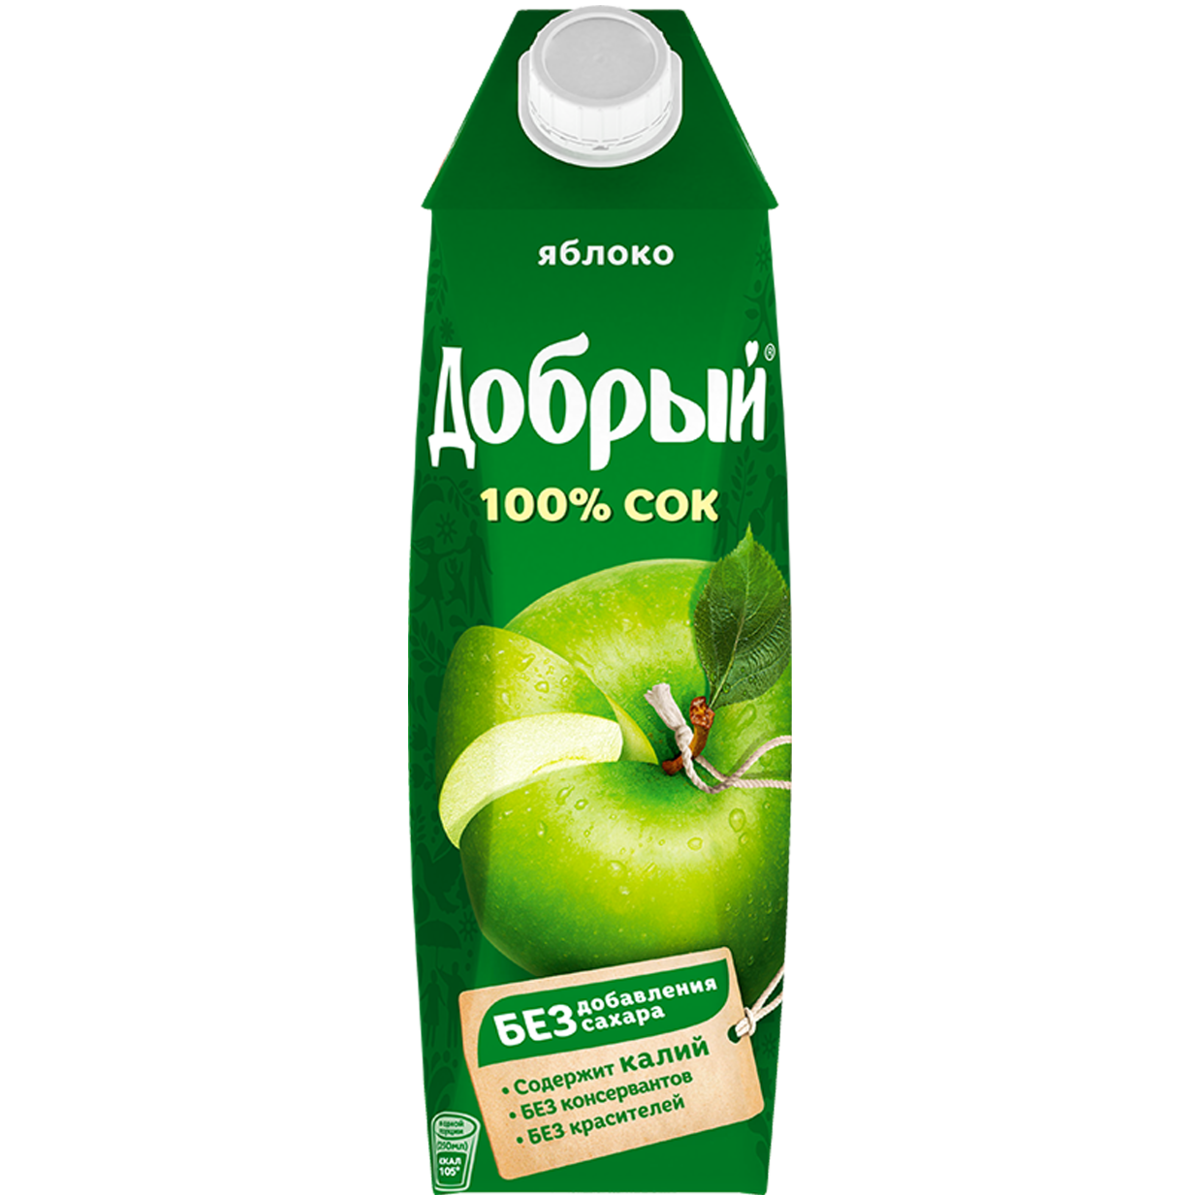 Сок Добрый яблоко 1 л